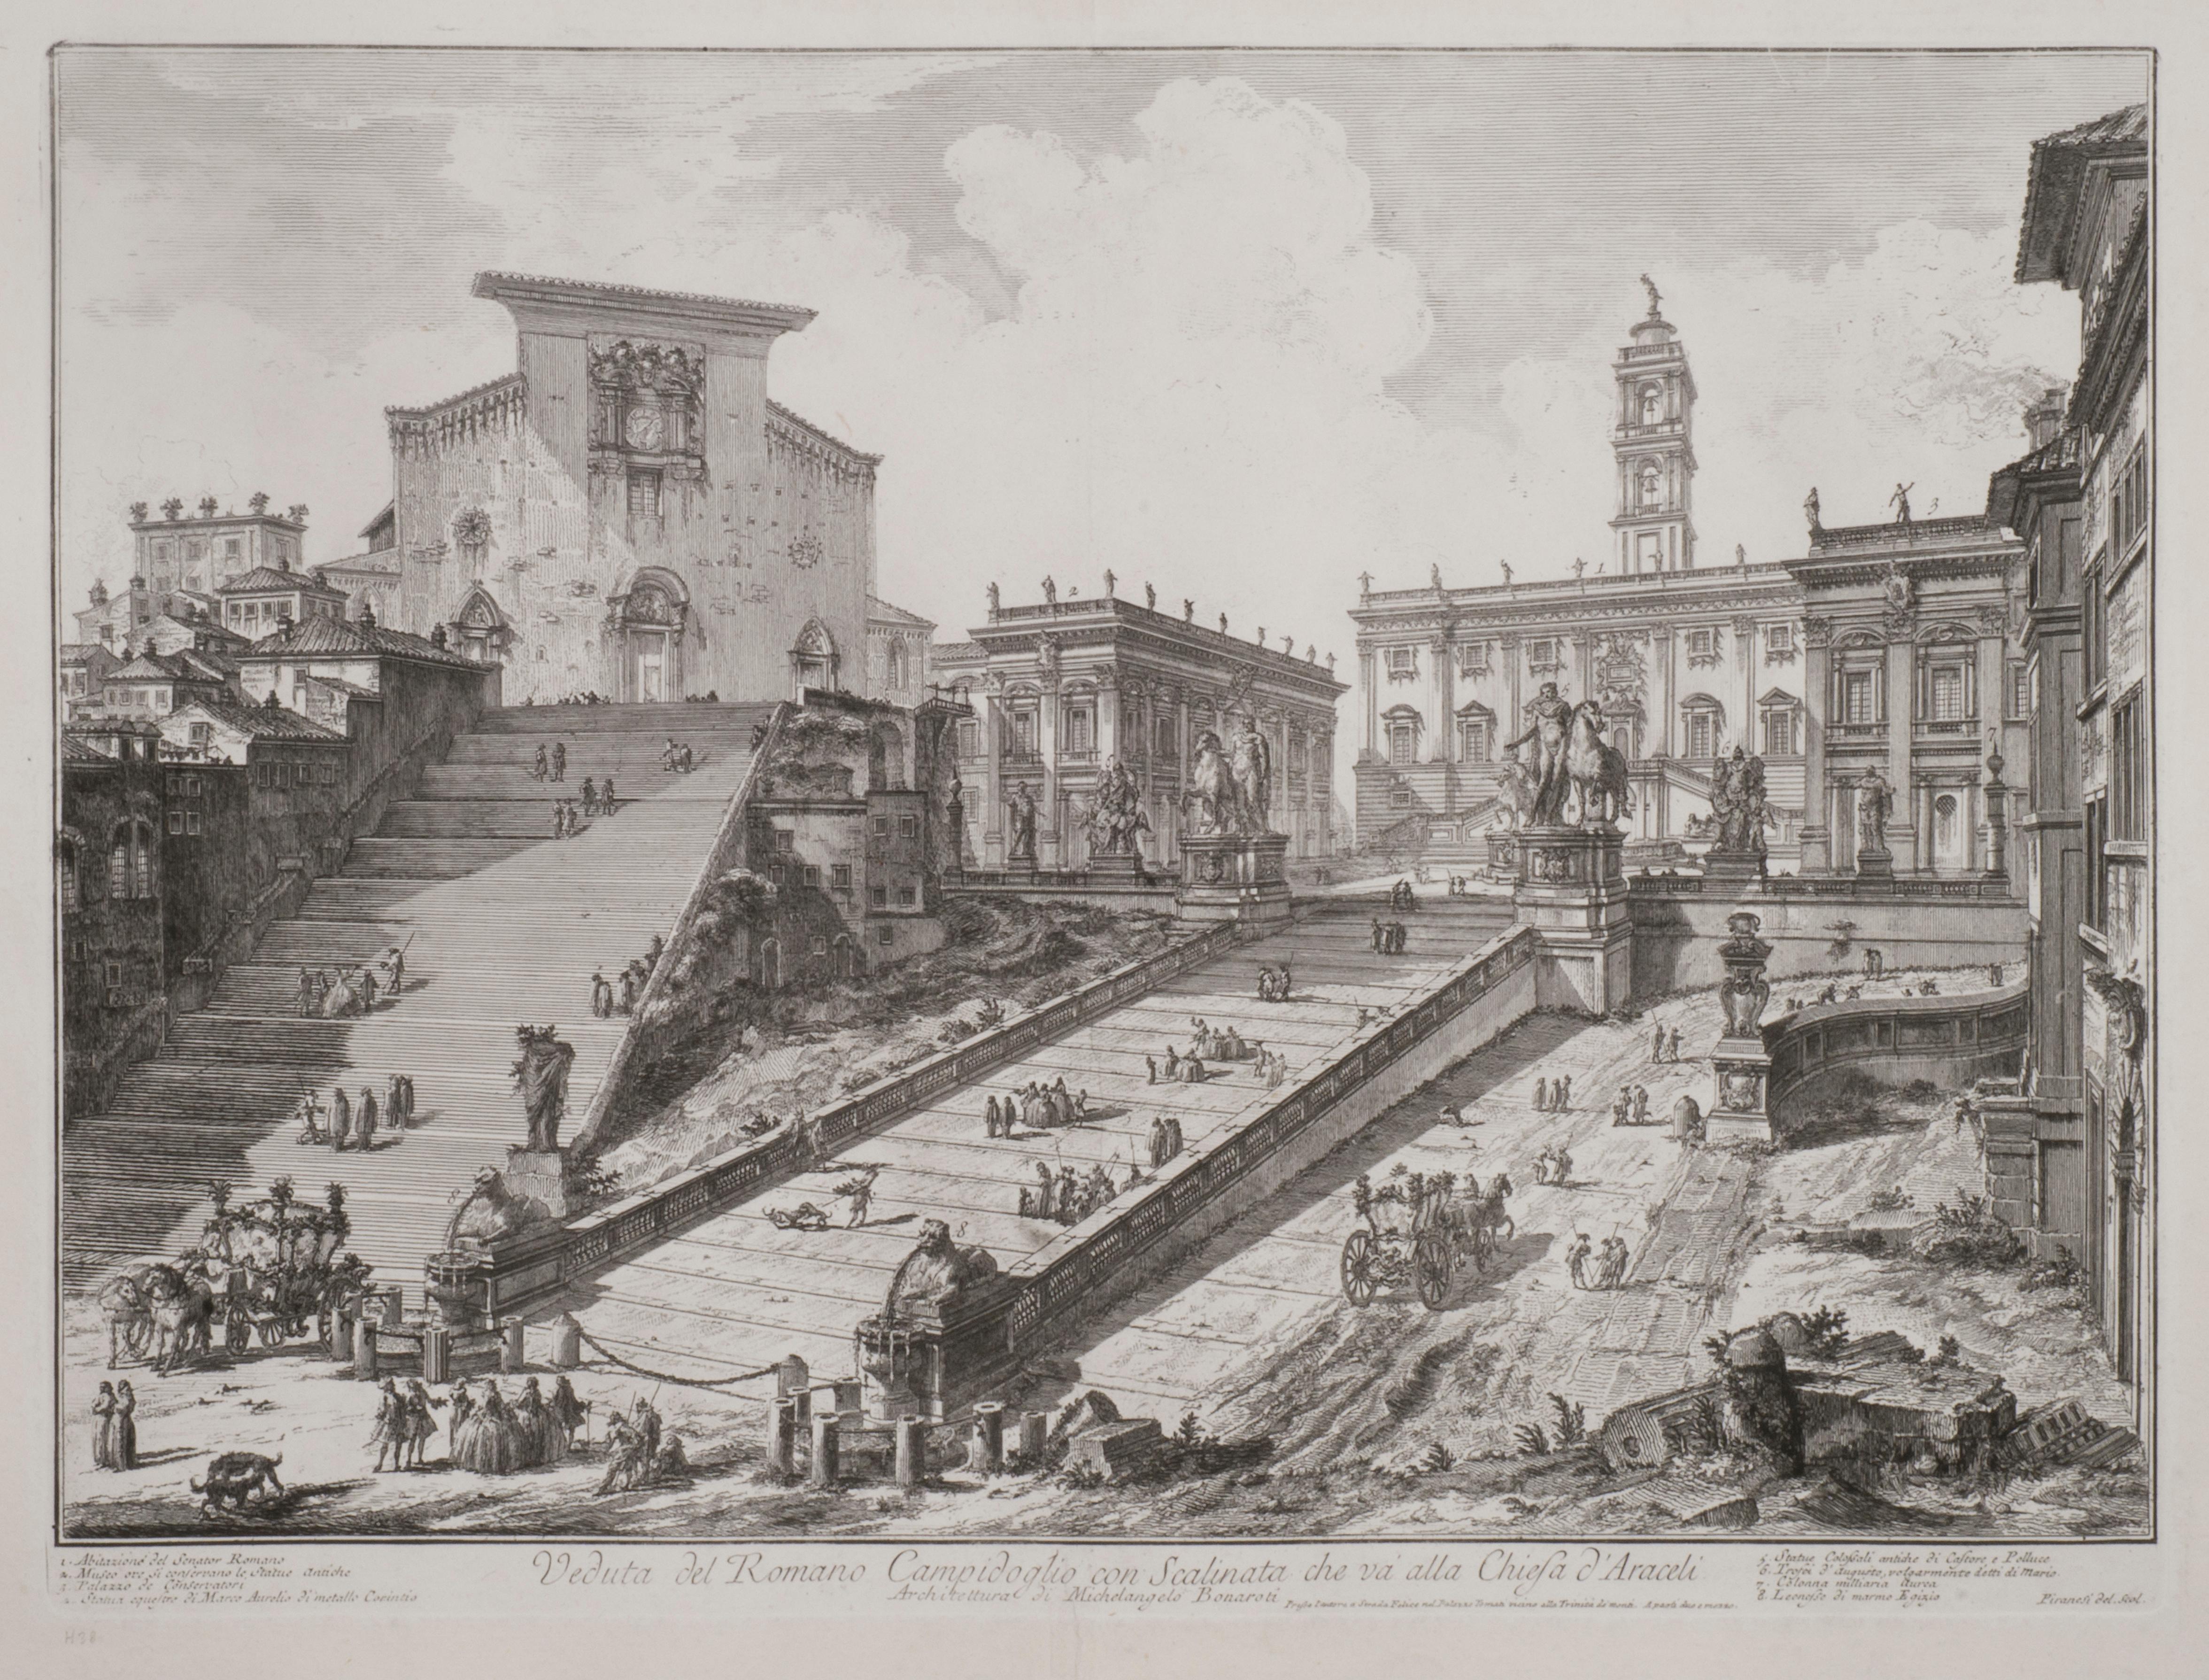 Landscape Print Giovanni Battista Piranesi - Veduta del Romano Camipidpglio con scalinata che va alla chisea d'A.I.C. (The C